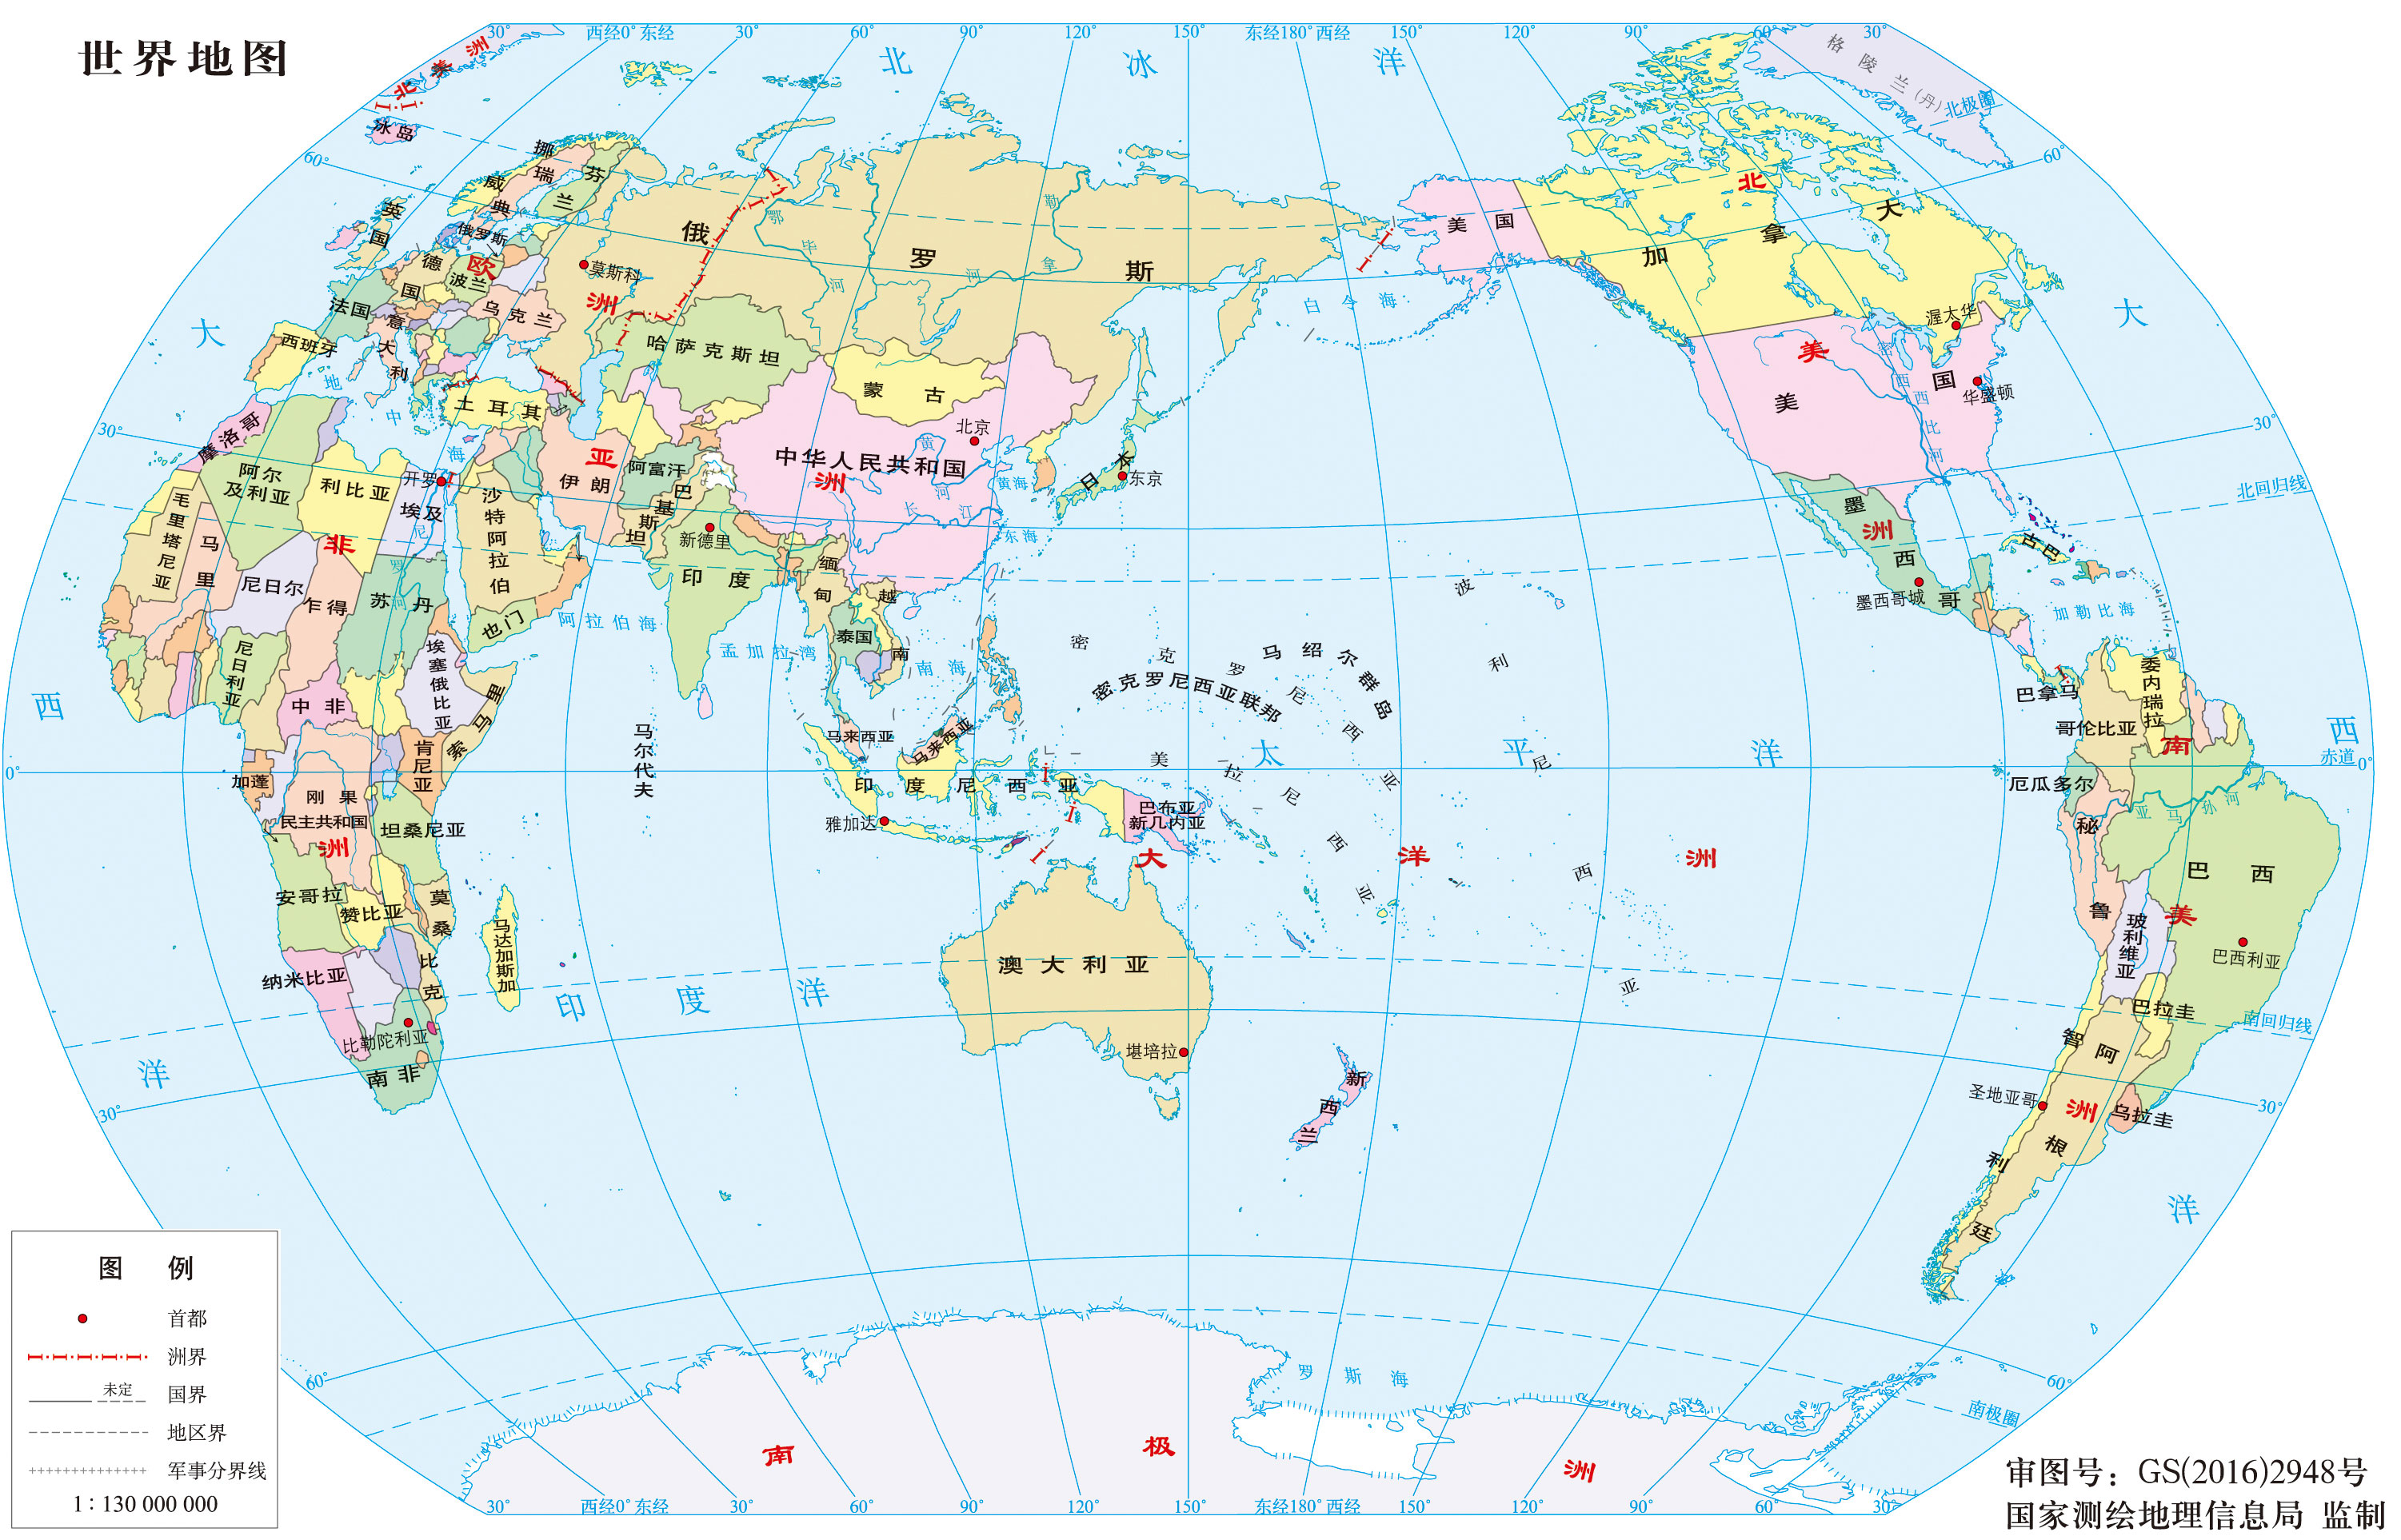 世界地图 世界地图中文版 世界地图高清版全图